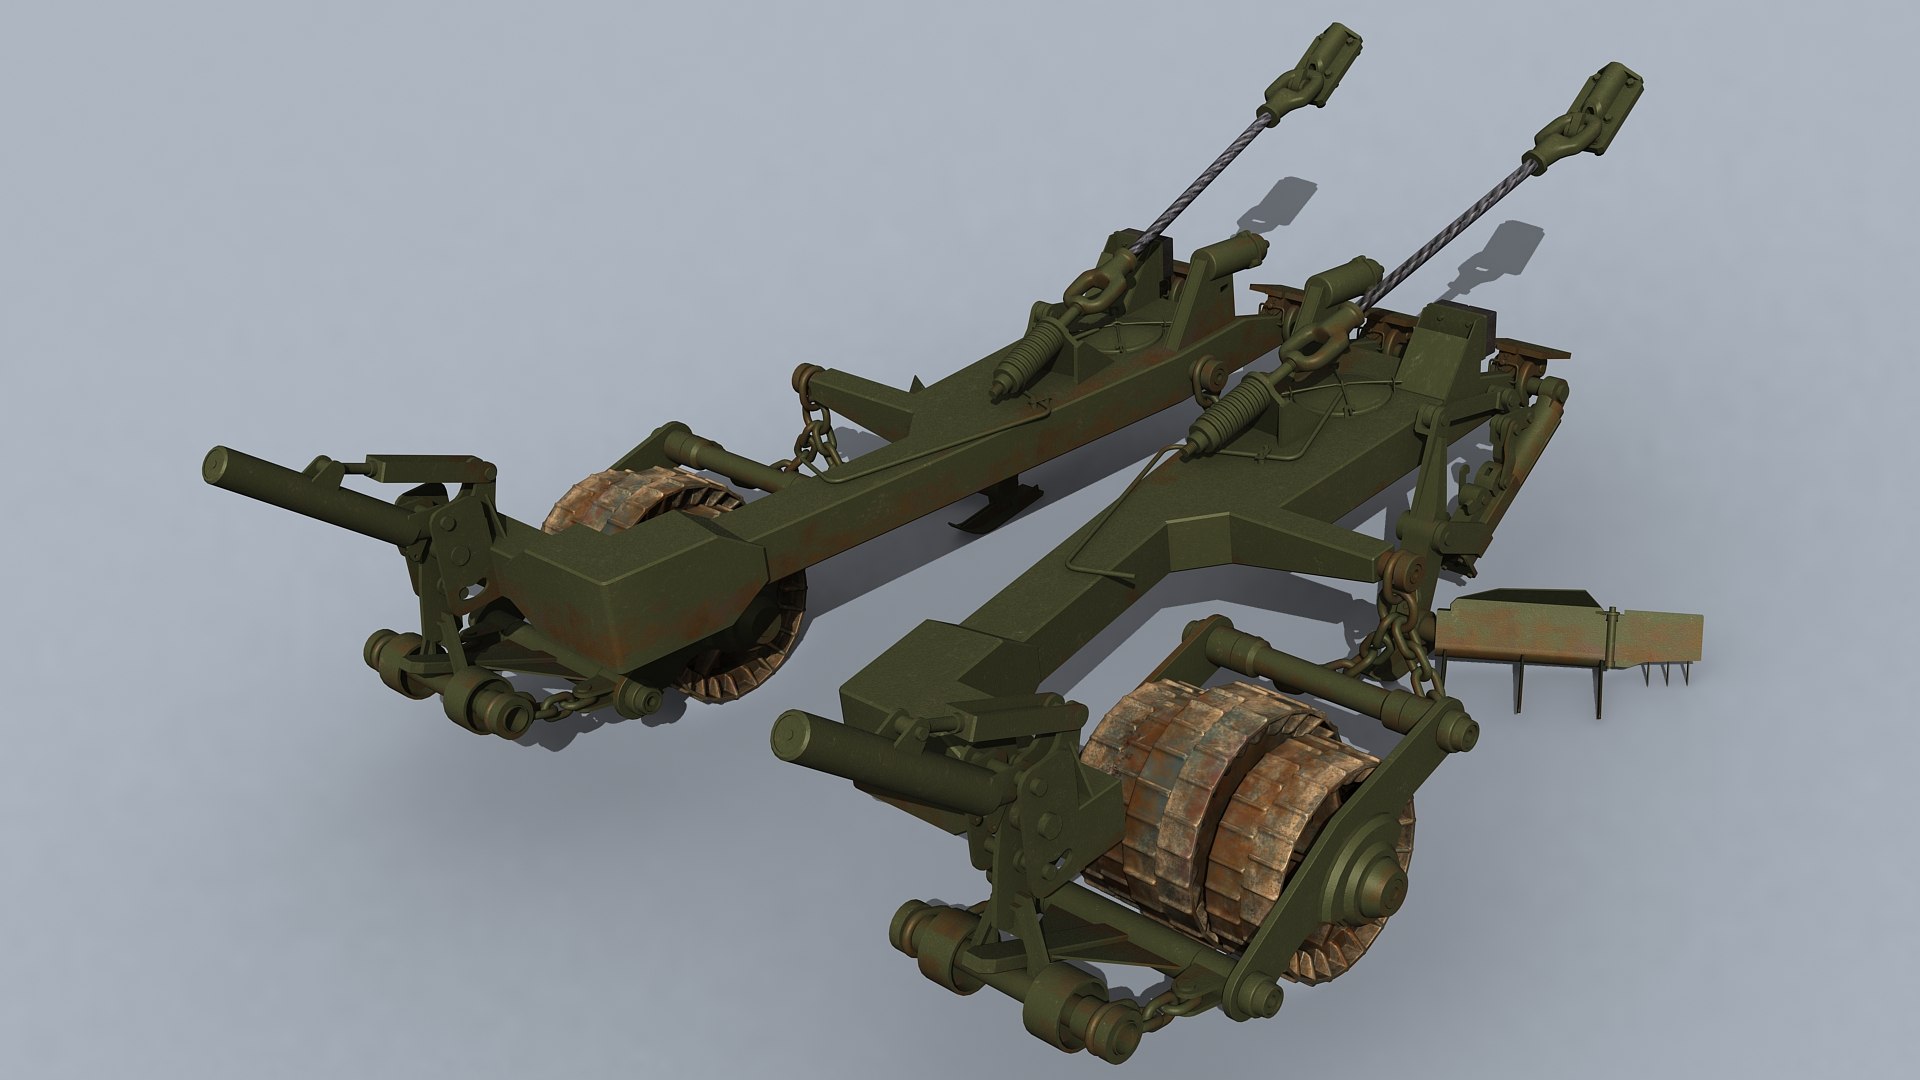 3D model KMT-7 tank mine roller https://p.turbosquid.com/ts-thumb/ys/enkOhP/ud/kmt7_prev02/jpg/1618943095/1920x1080/fit_q87/1dade83756b82faa71c82cdaffee2f8431c29bb4/kmt7_prev02.jpg